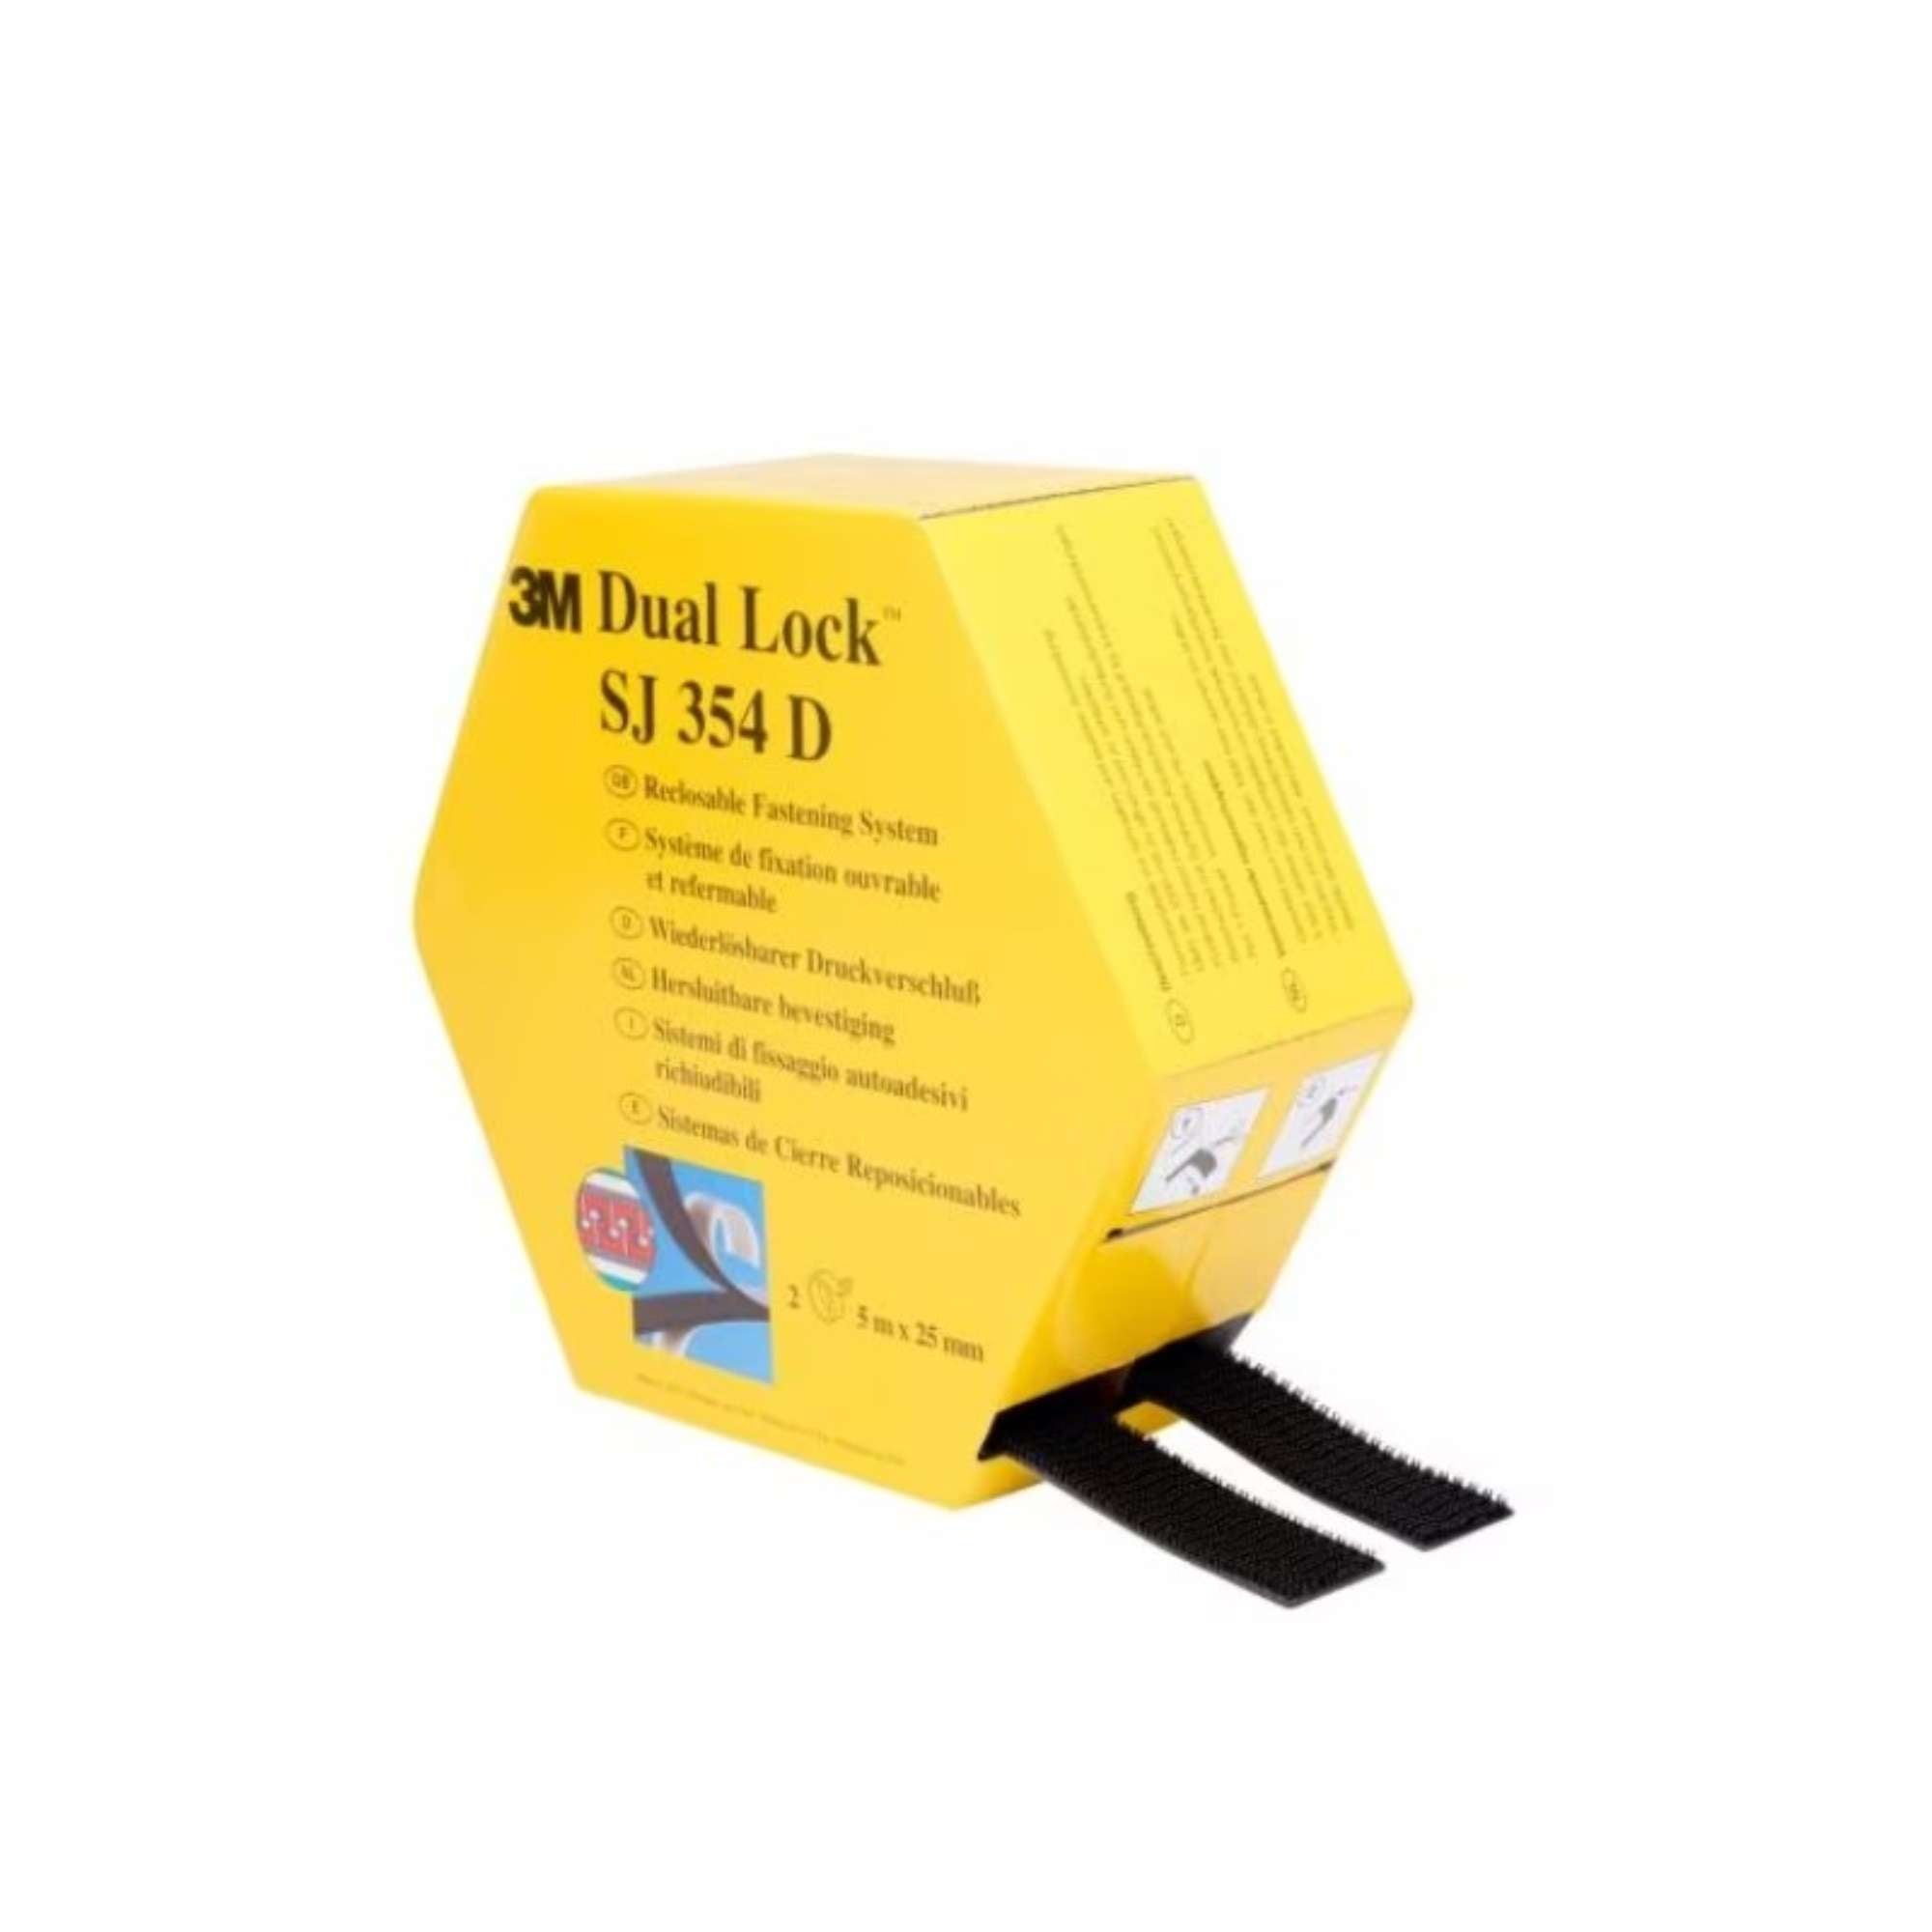 Sistema di fissaggio richiudibile Dual-Lock Nero H.25mm x 2,5mt - 3M 7100123339